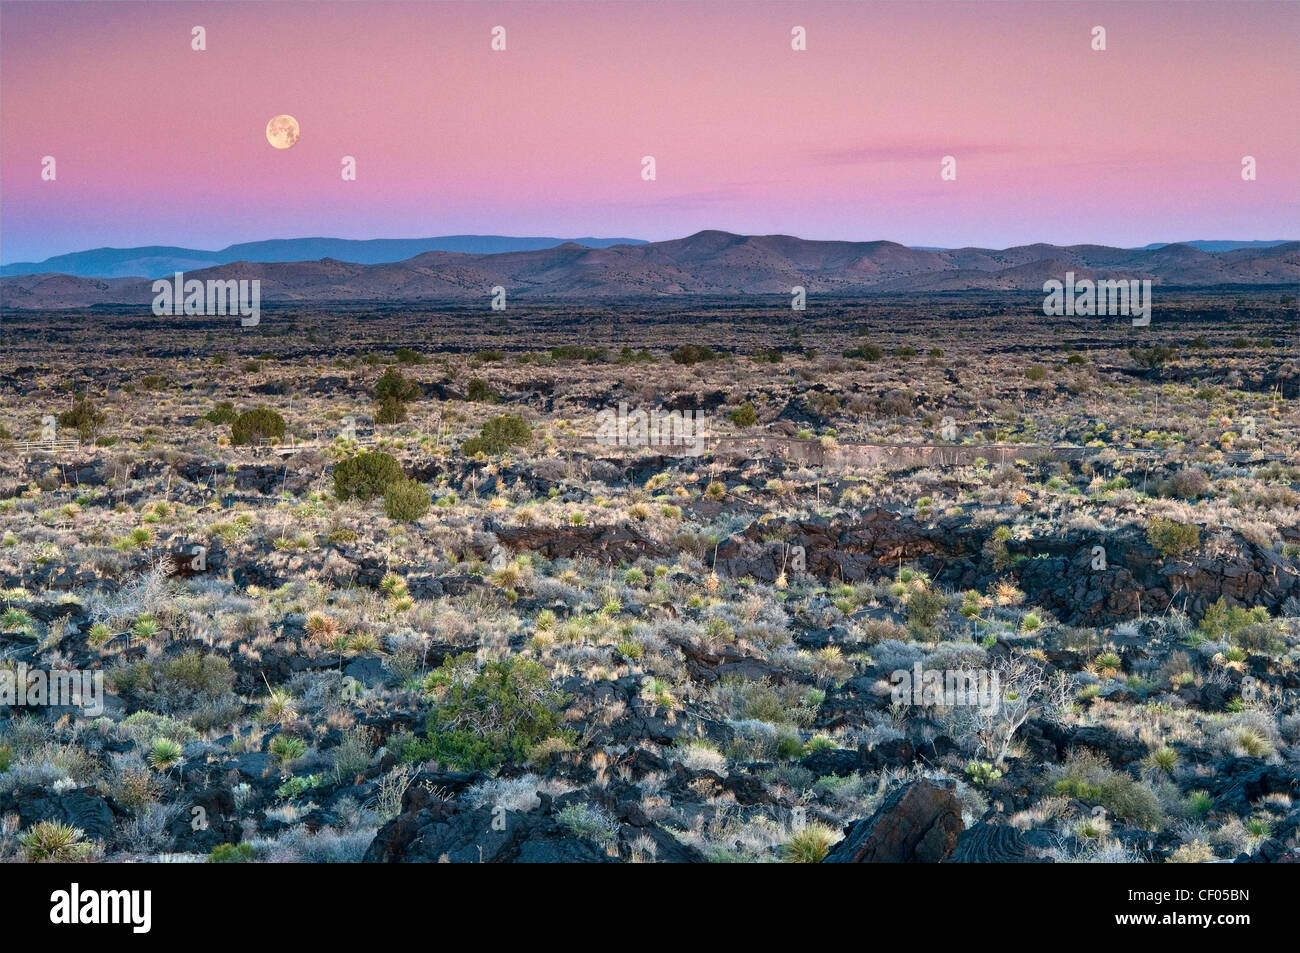 Impostazione della luna in basso a sunrise over Carrizozo Malpais campo lavico, Valle di incendi, vicino Carrizozo, Nuovo Messico, STATI UNITI D'AMERICA Foto Stock